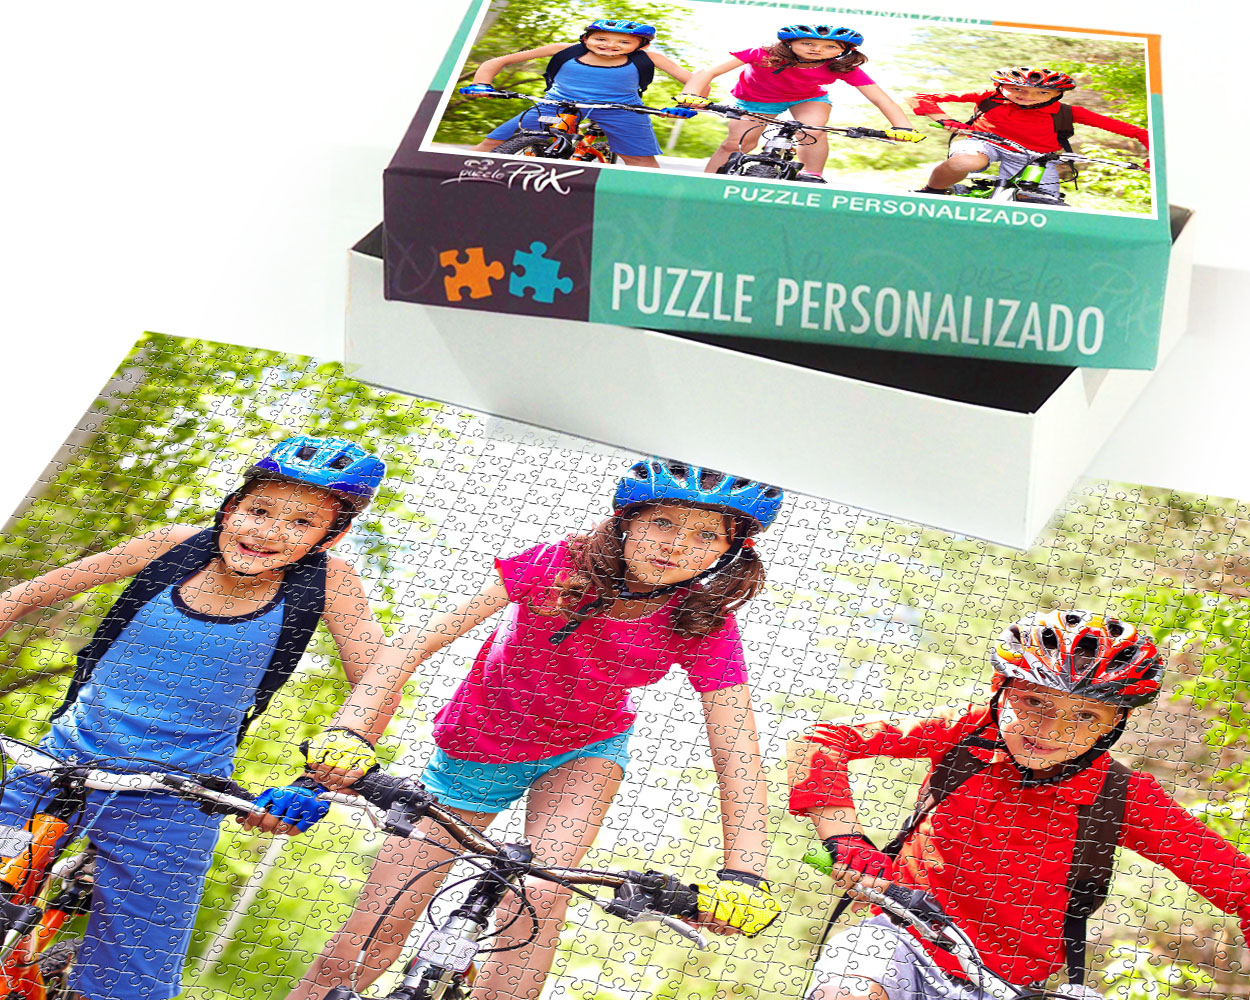 Puzzle personalizado 2000 piezas | Prix